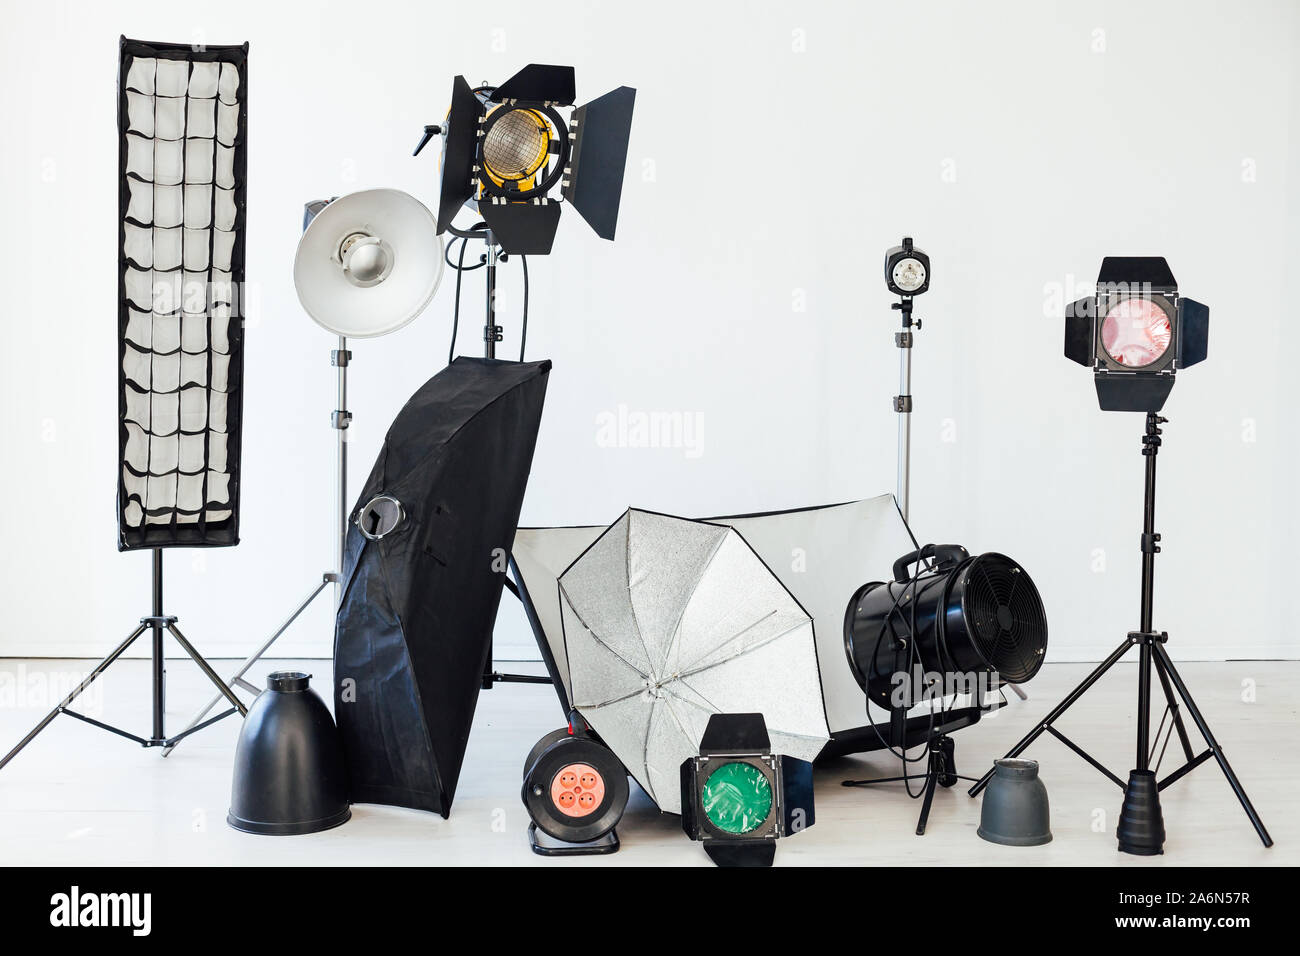 L'équipement de studio photo photographe accessoires lumière flash sur fond blanc Banque D'Images